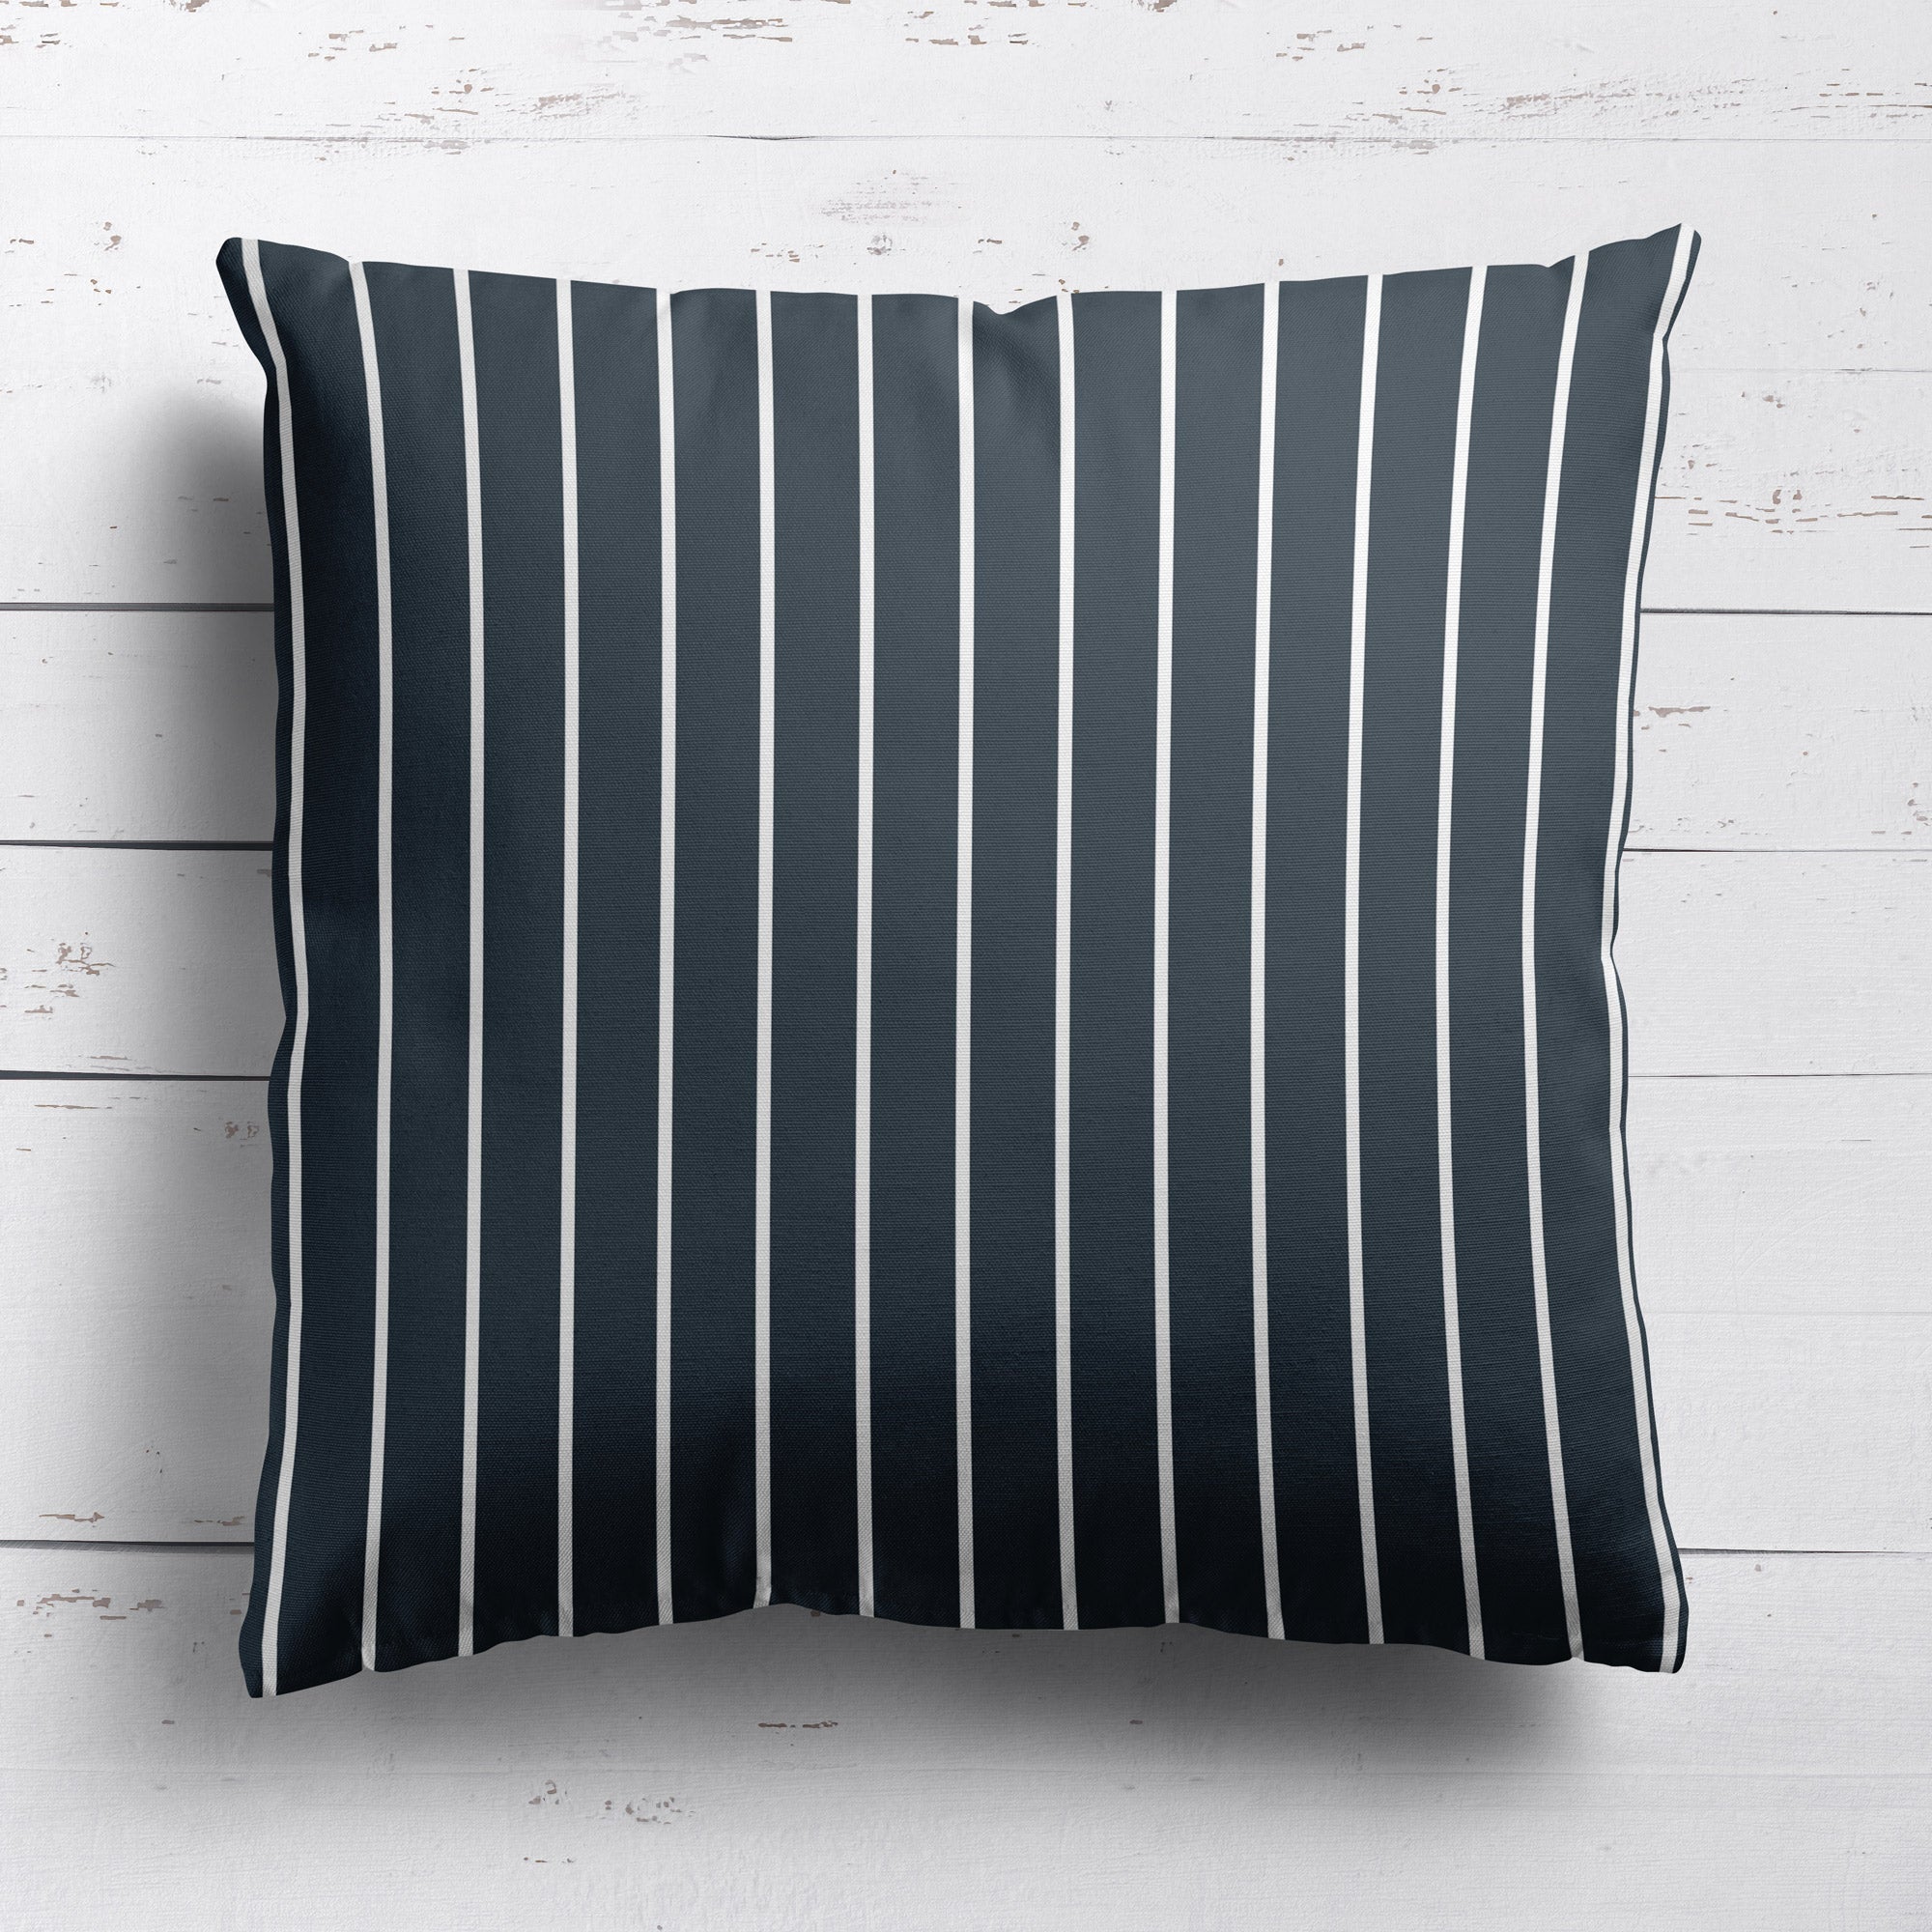 Breton Stripe Reverse Fabric - Graphite - Hydrangea Lane Home